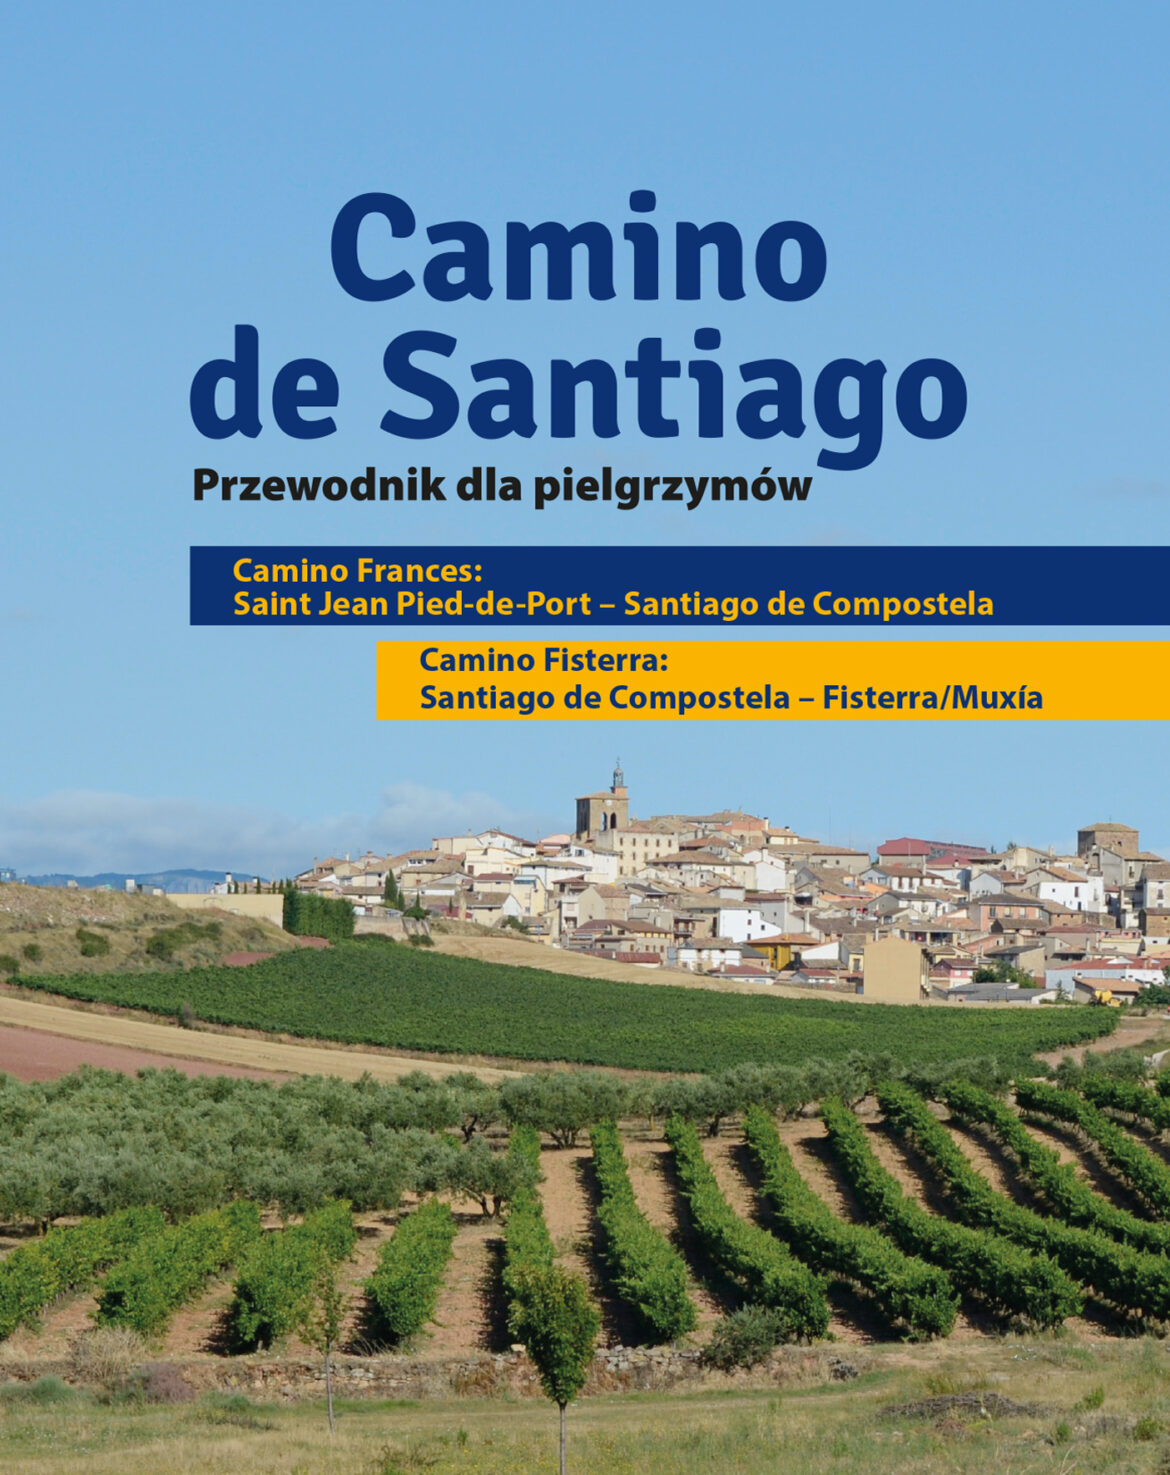 Camino de Santiago. Przewodnik | Wydawnictwo WAM